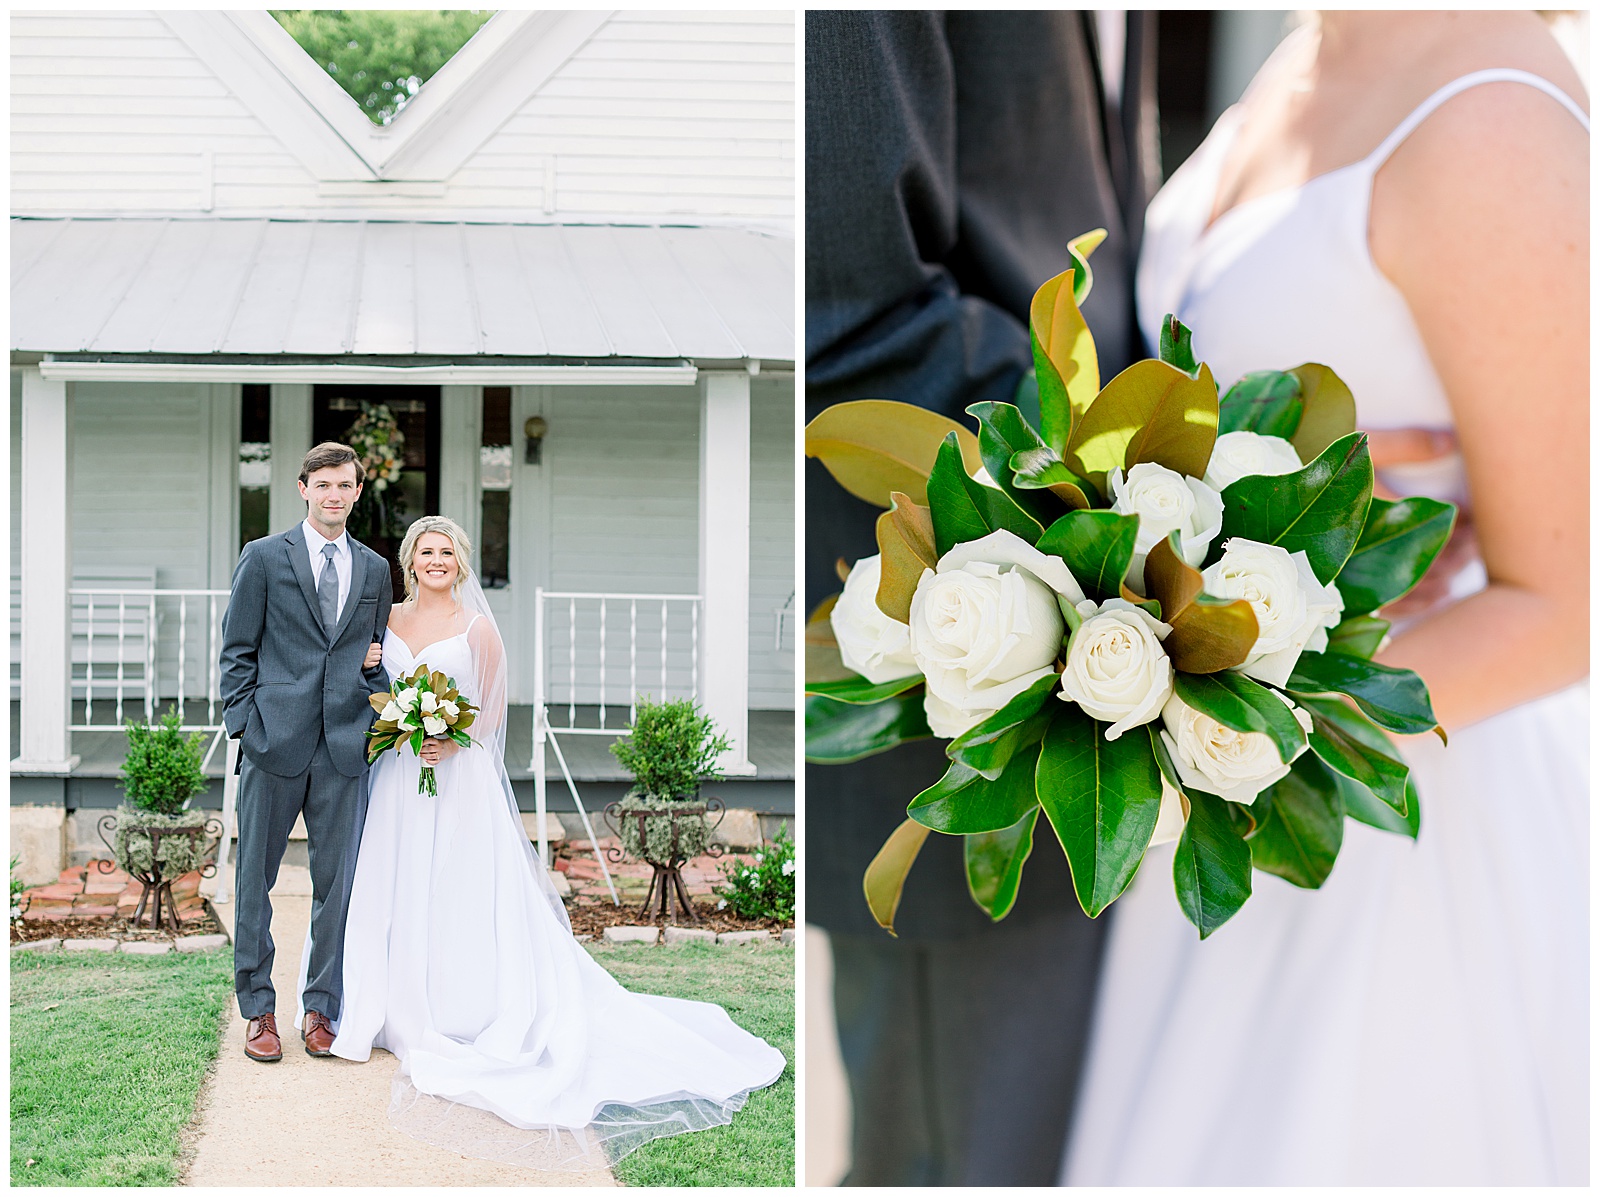 KelseyThomas_Bride&Groom_014_Tuscaloosa-Wedding-Birmingham-Alabama-Wedding-Photographers-Abby-Bates-Photography.jpg